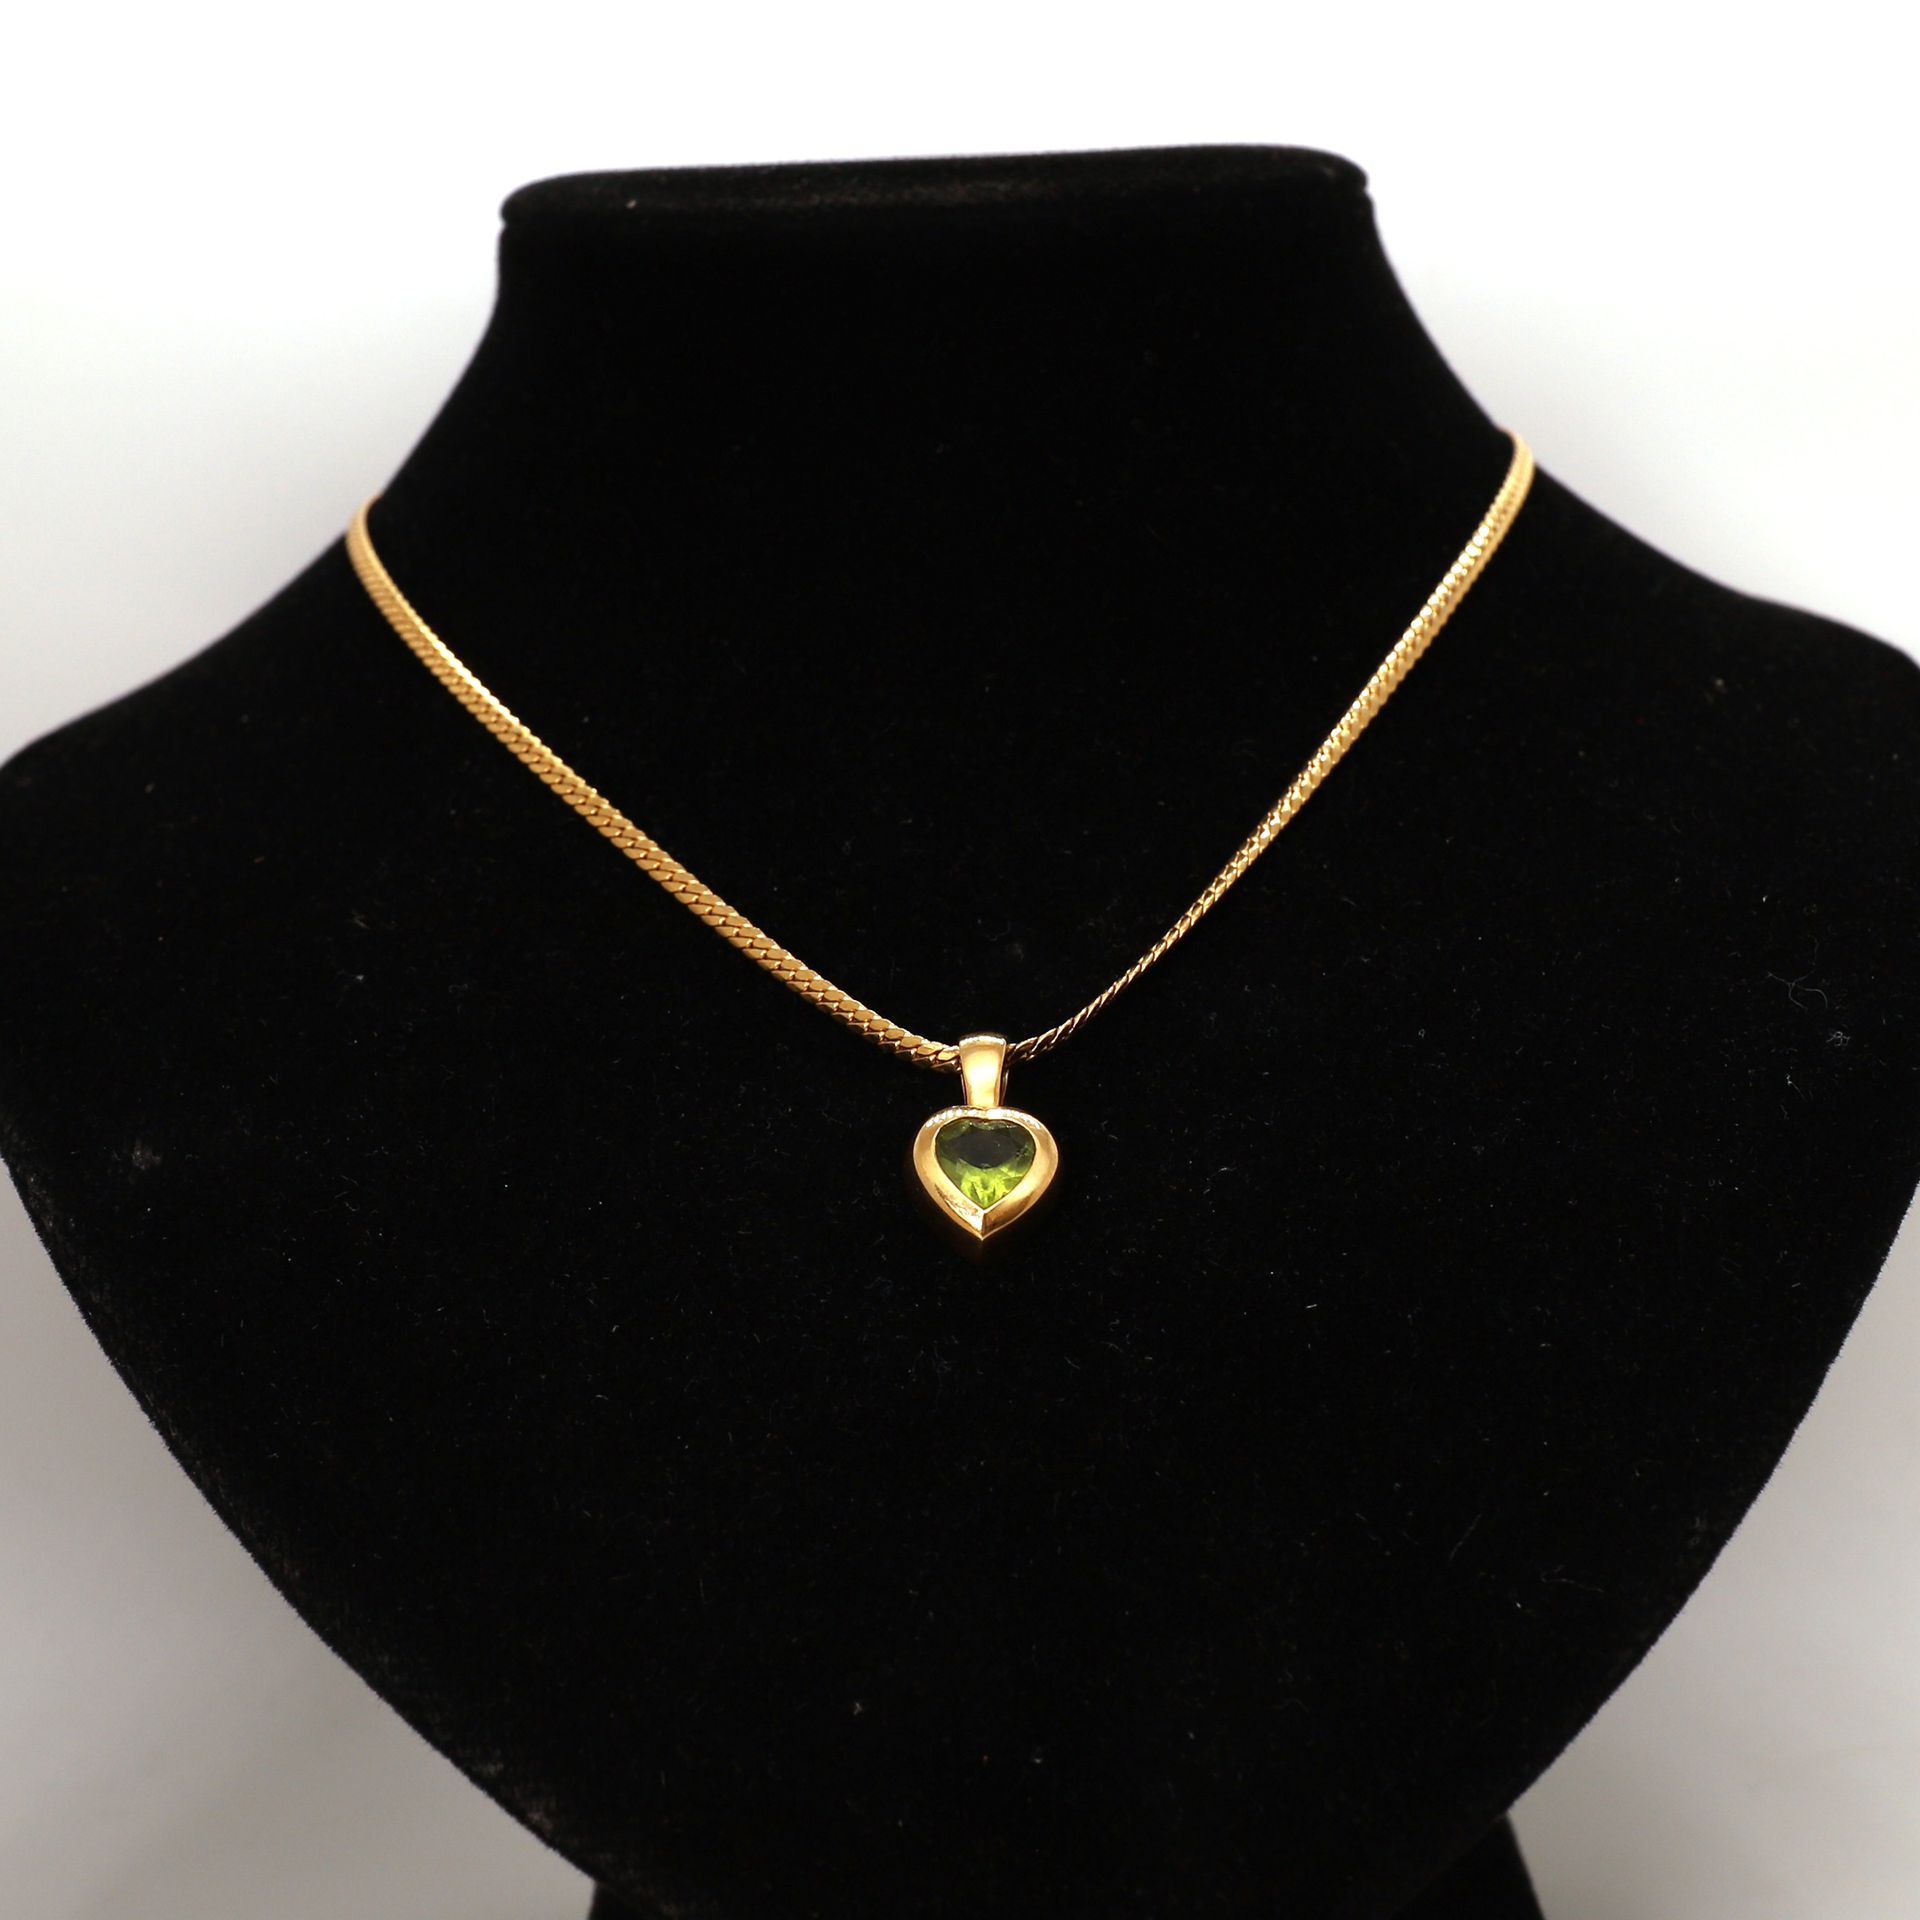 Null 黄金项链，黄金心形吊坠，镶嵌绿色宝石

英文网格

重量：13克